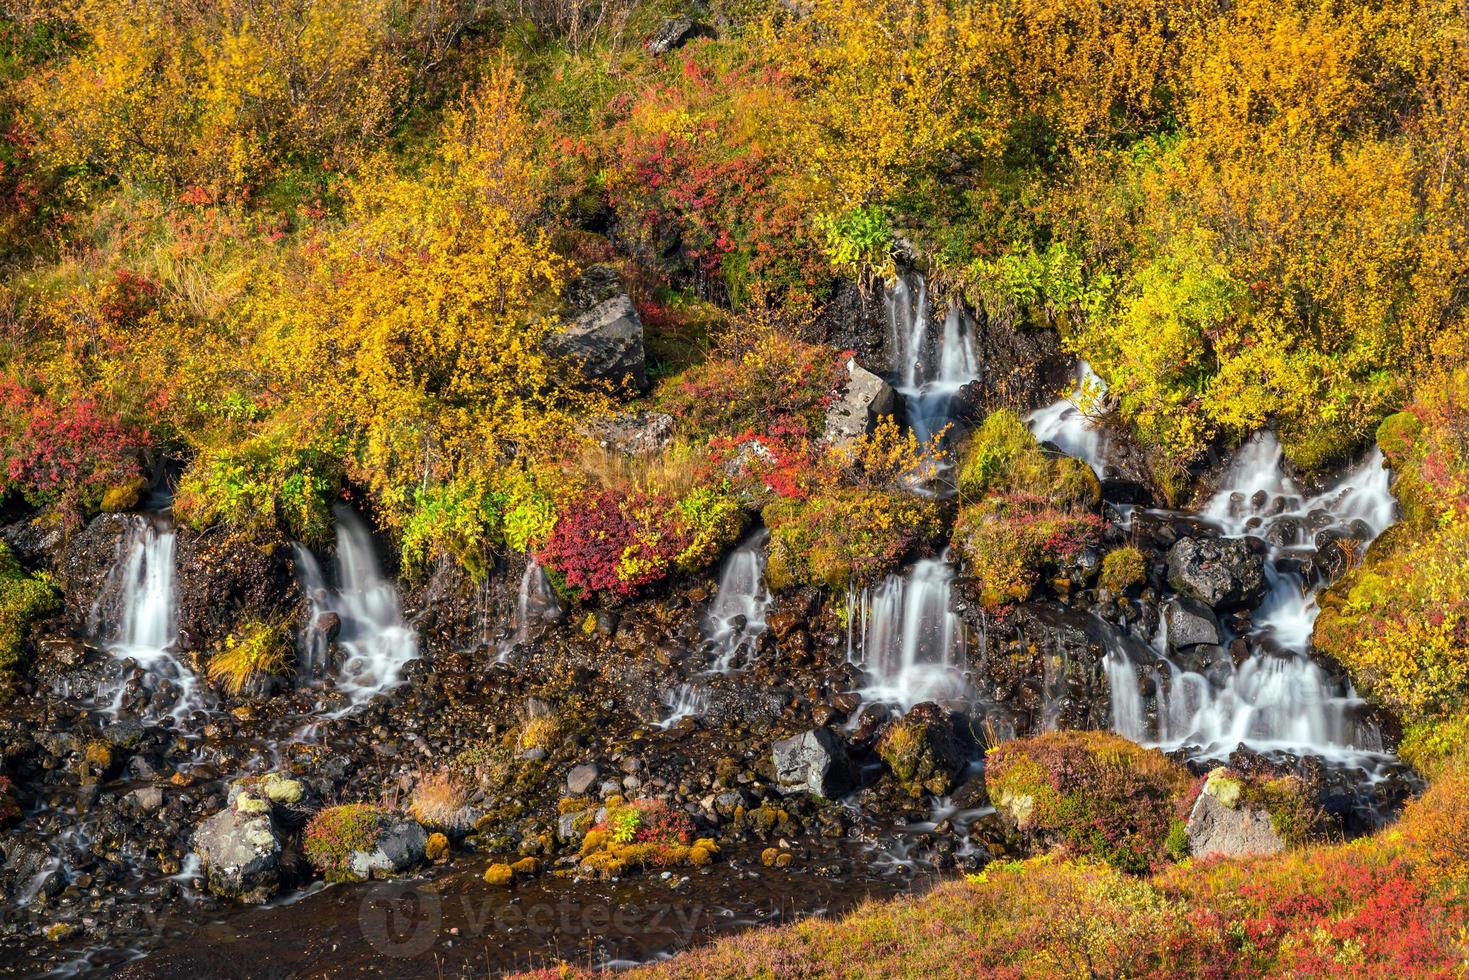 Hraunfossar waterfall in Iceland. Autumn photo